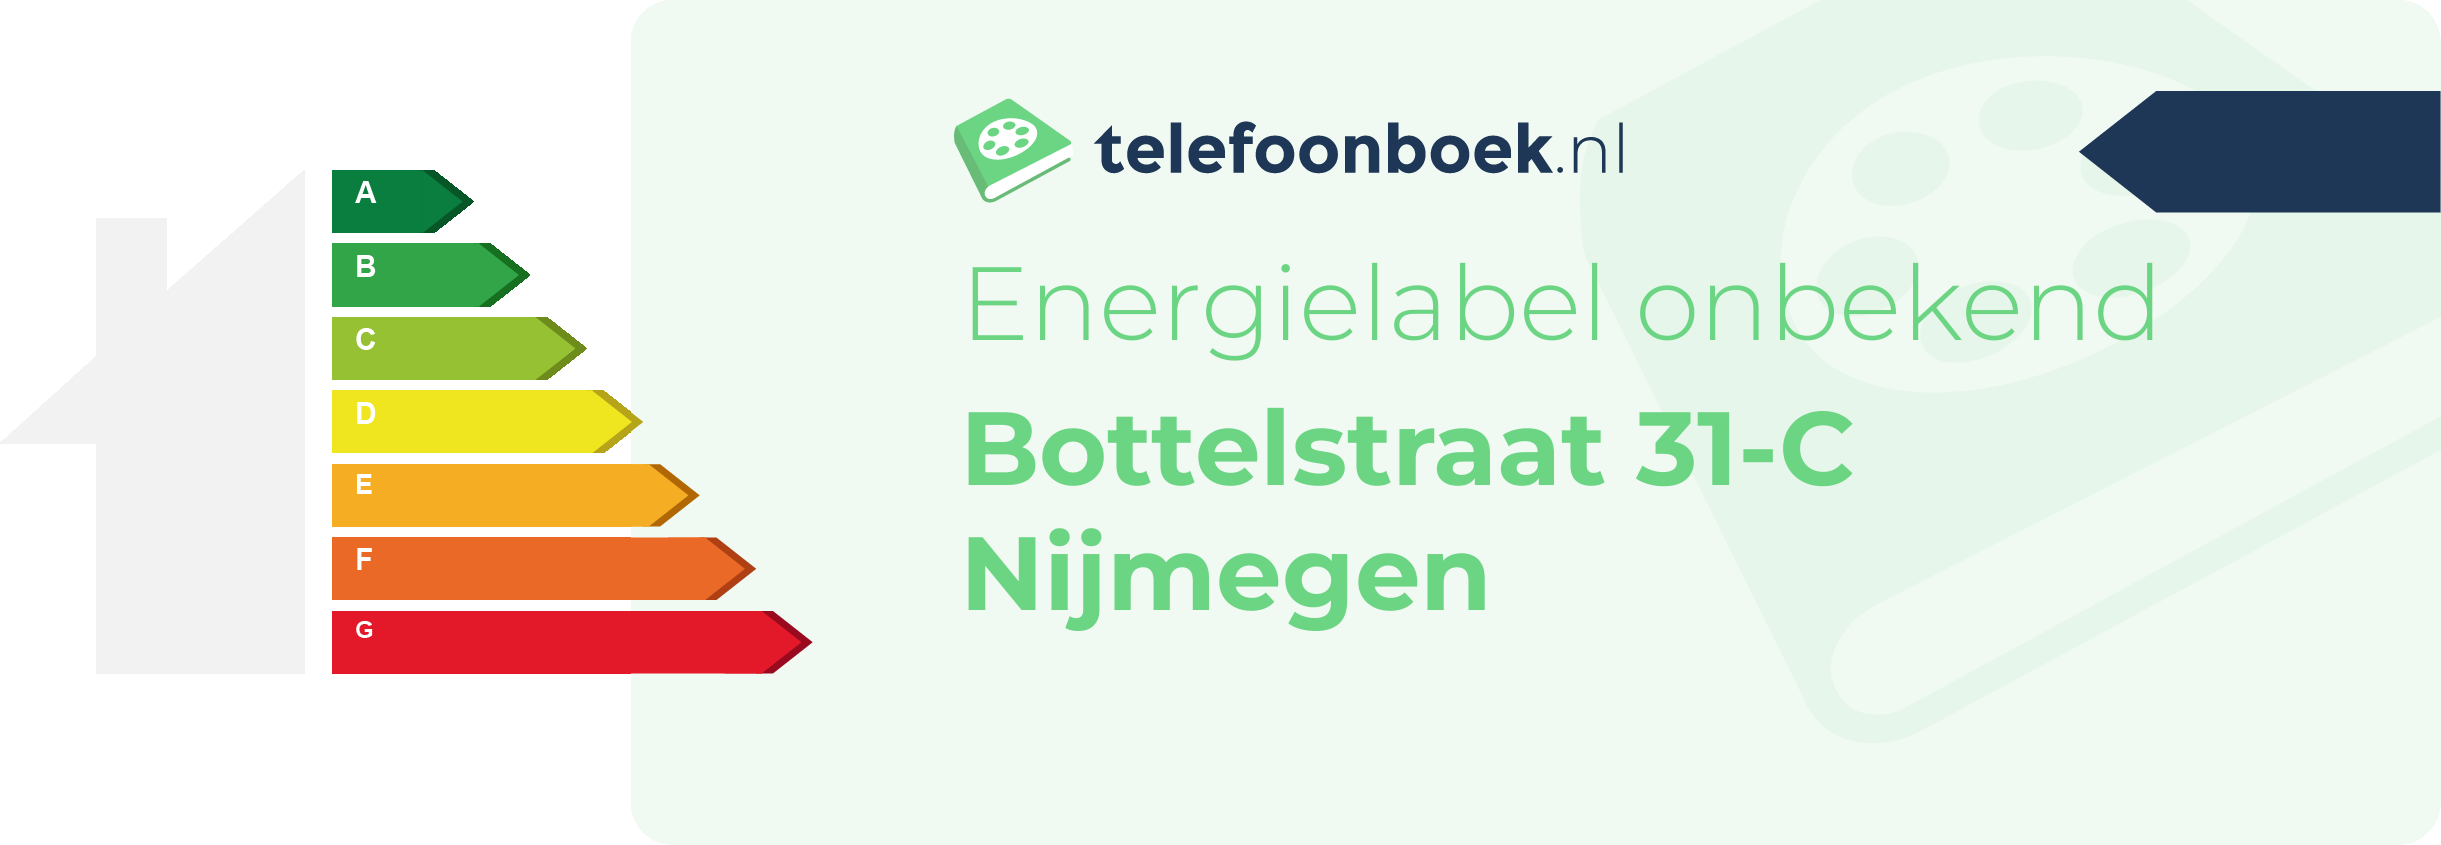 Energielabel Bottelstraat 31-C Nijmegen